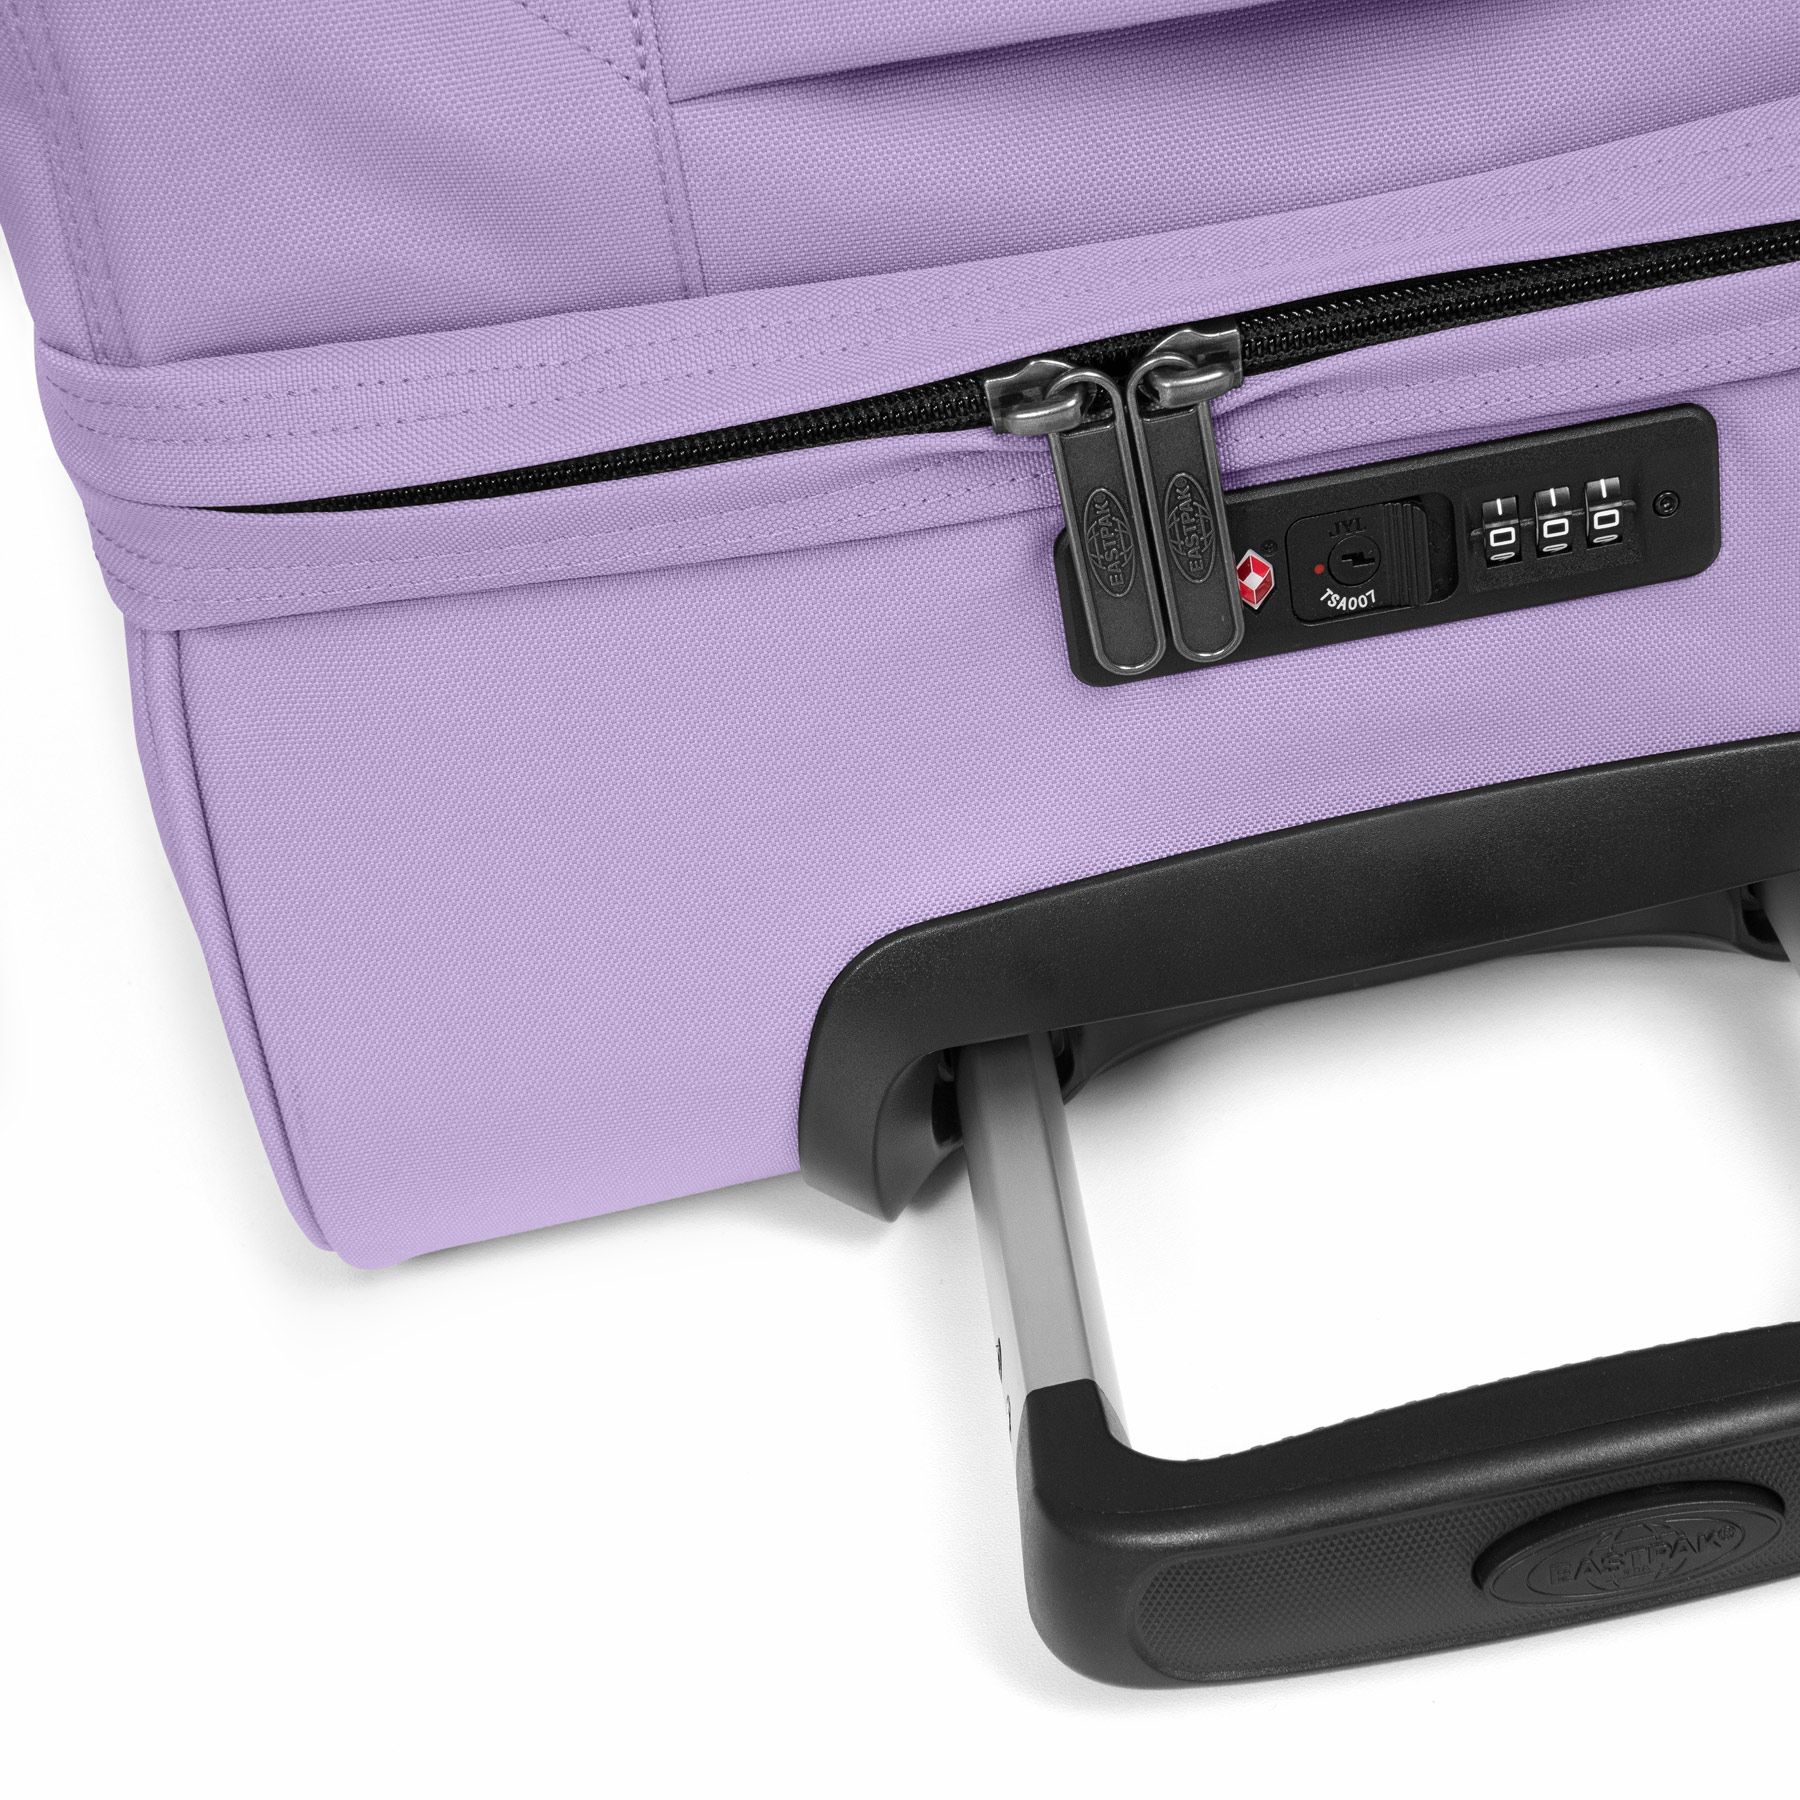 Eastpak Transit'R L 121 Wheeled Bag/Suitcase